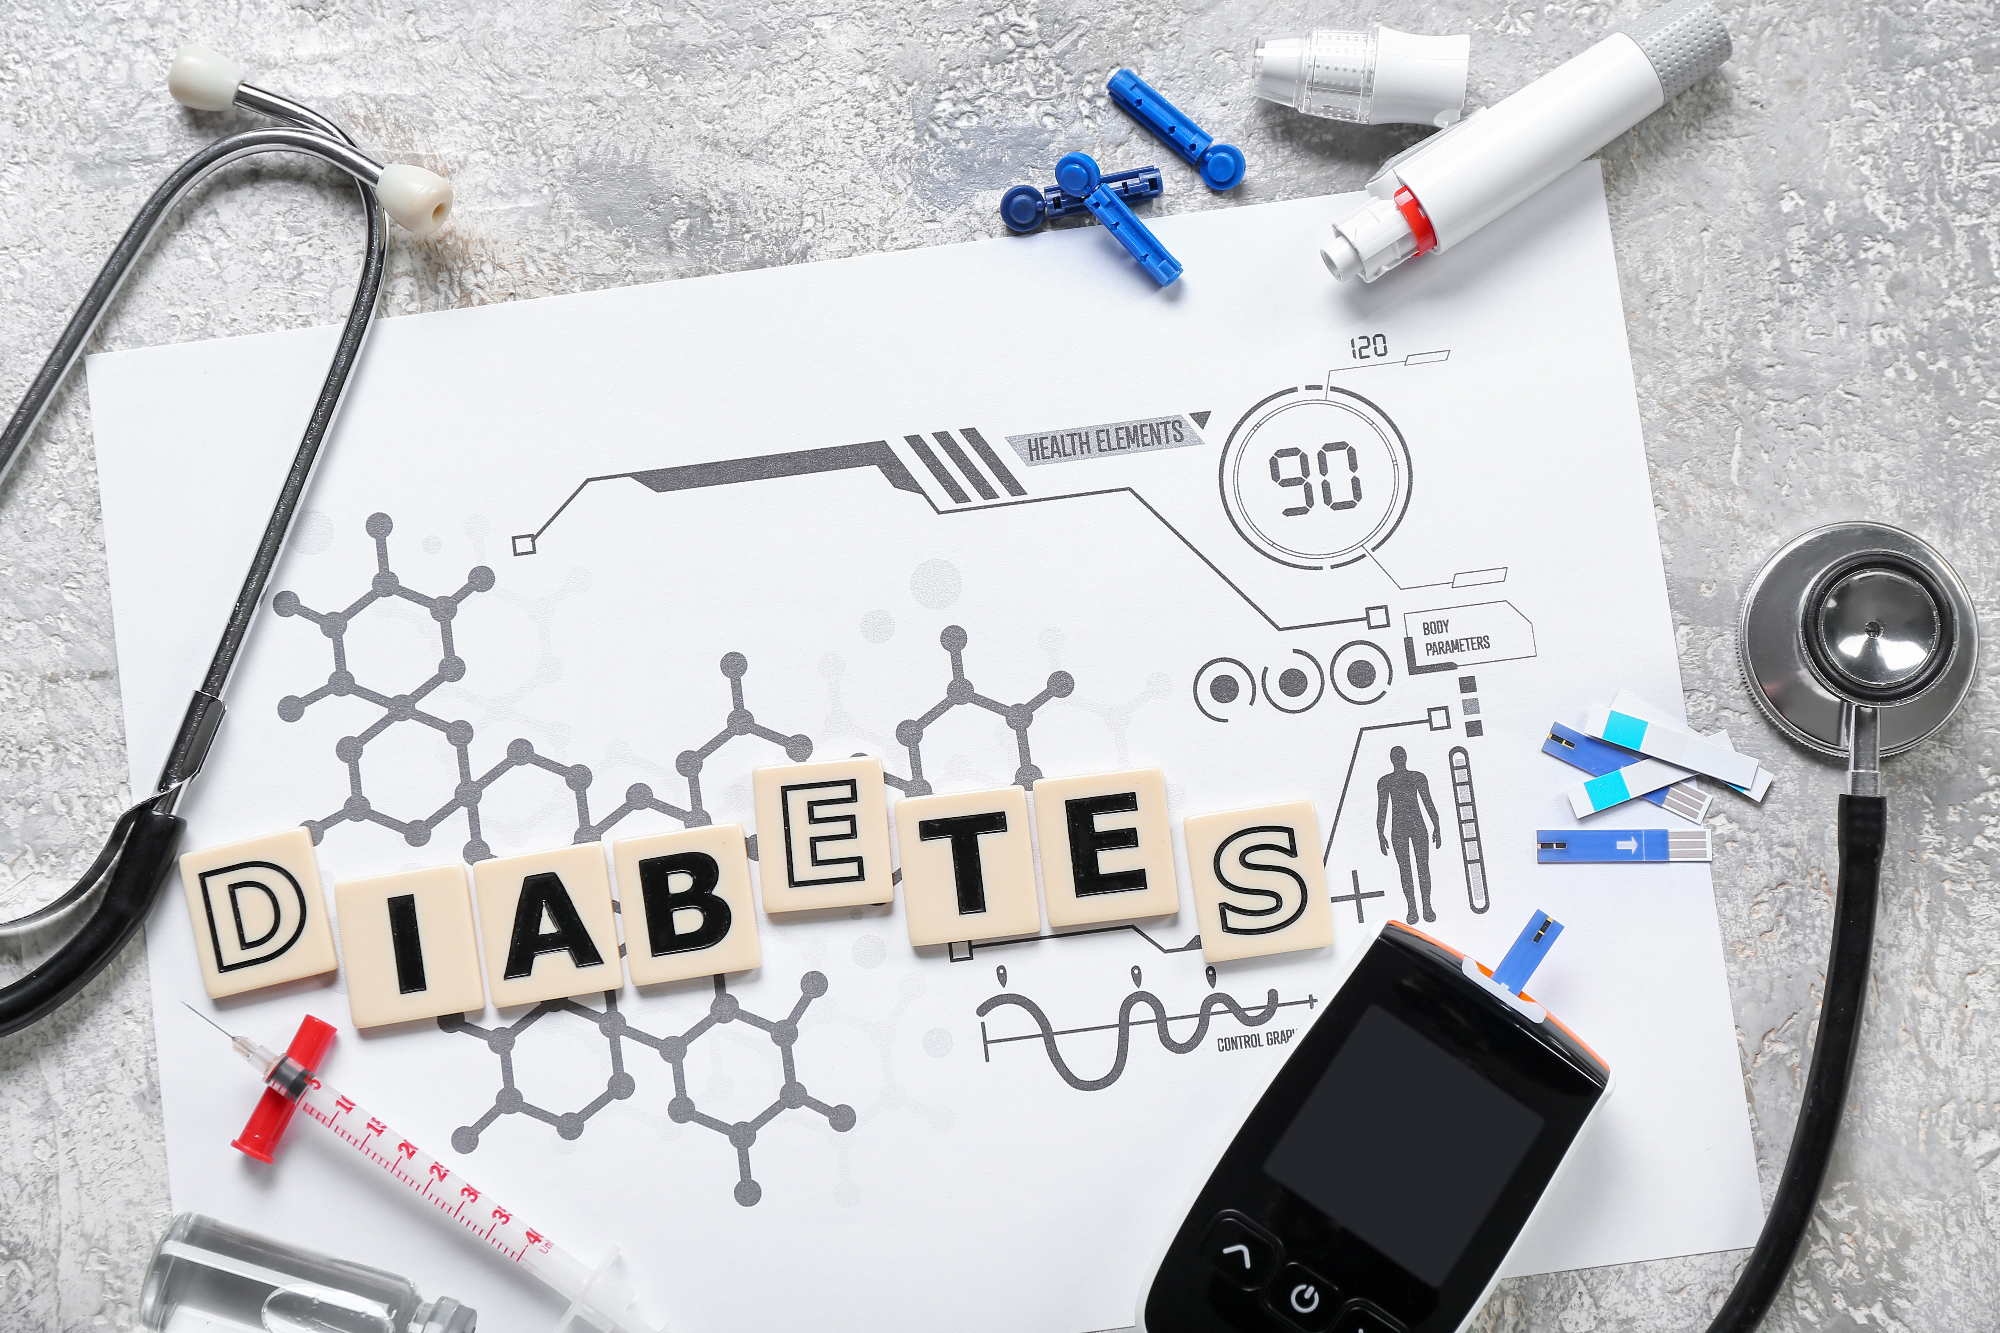 Ali so prvi znaki sladkorne bolezni očitni?